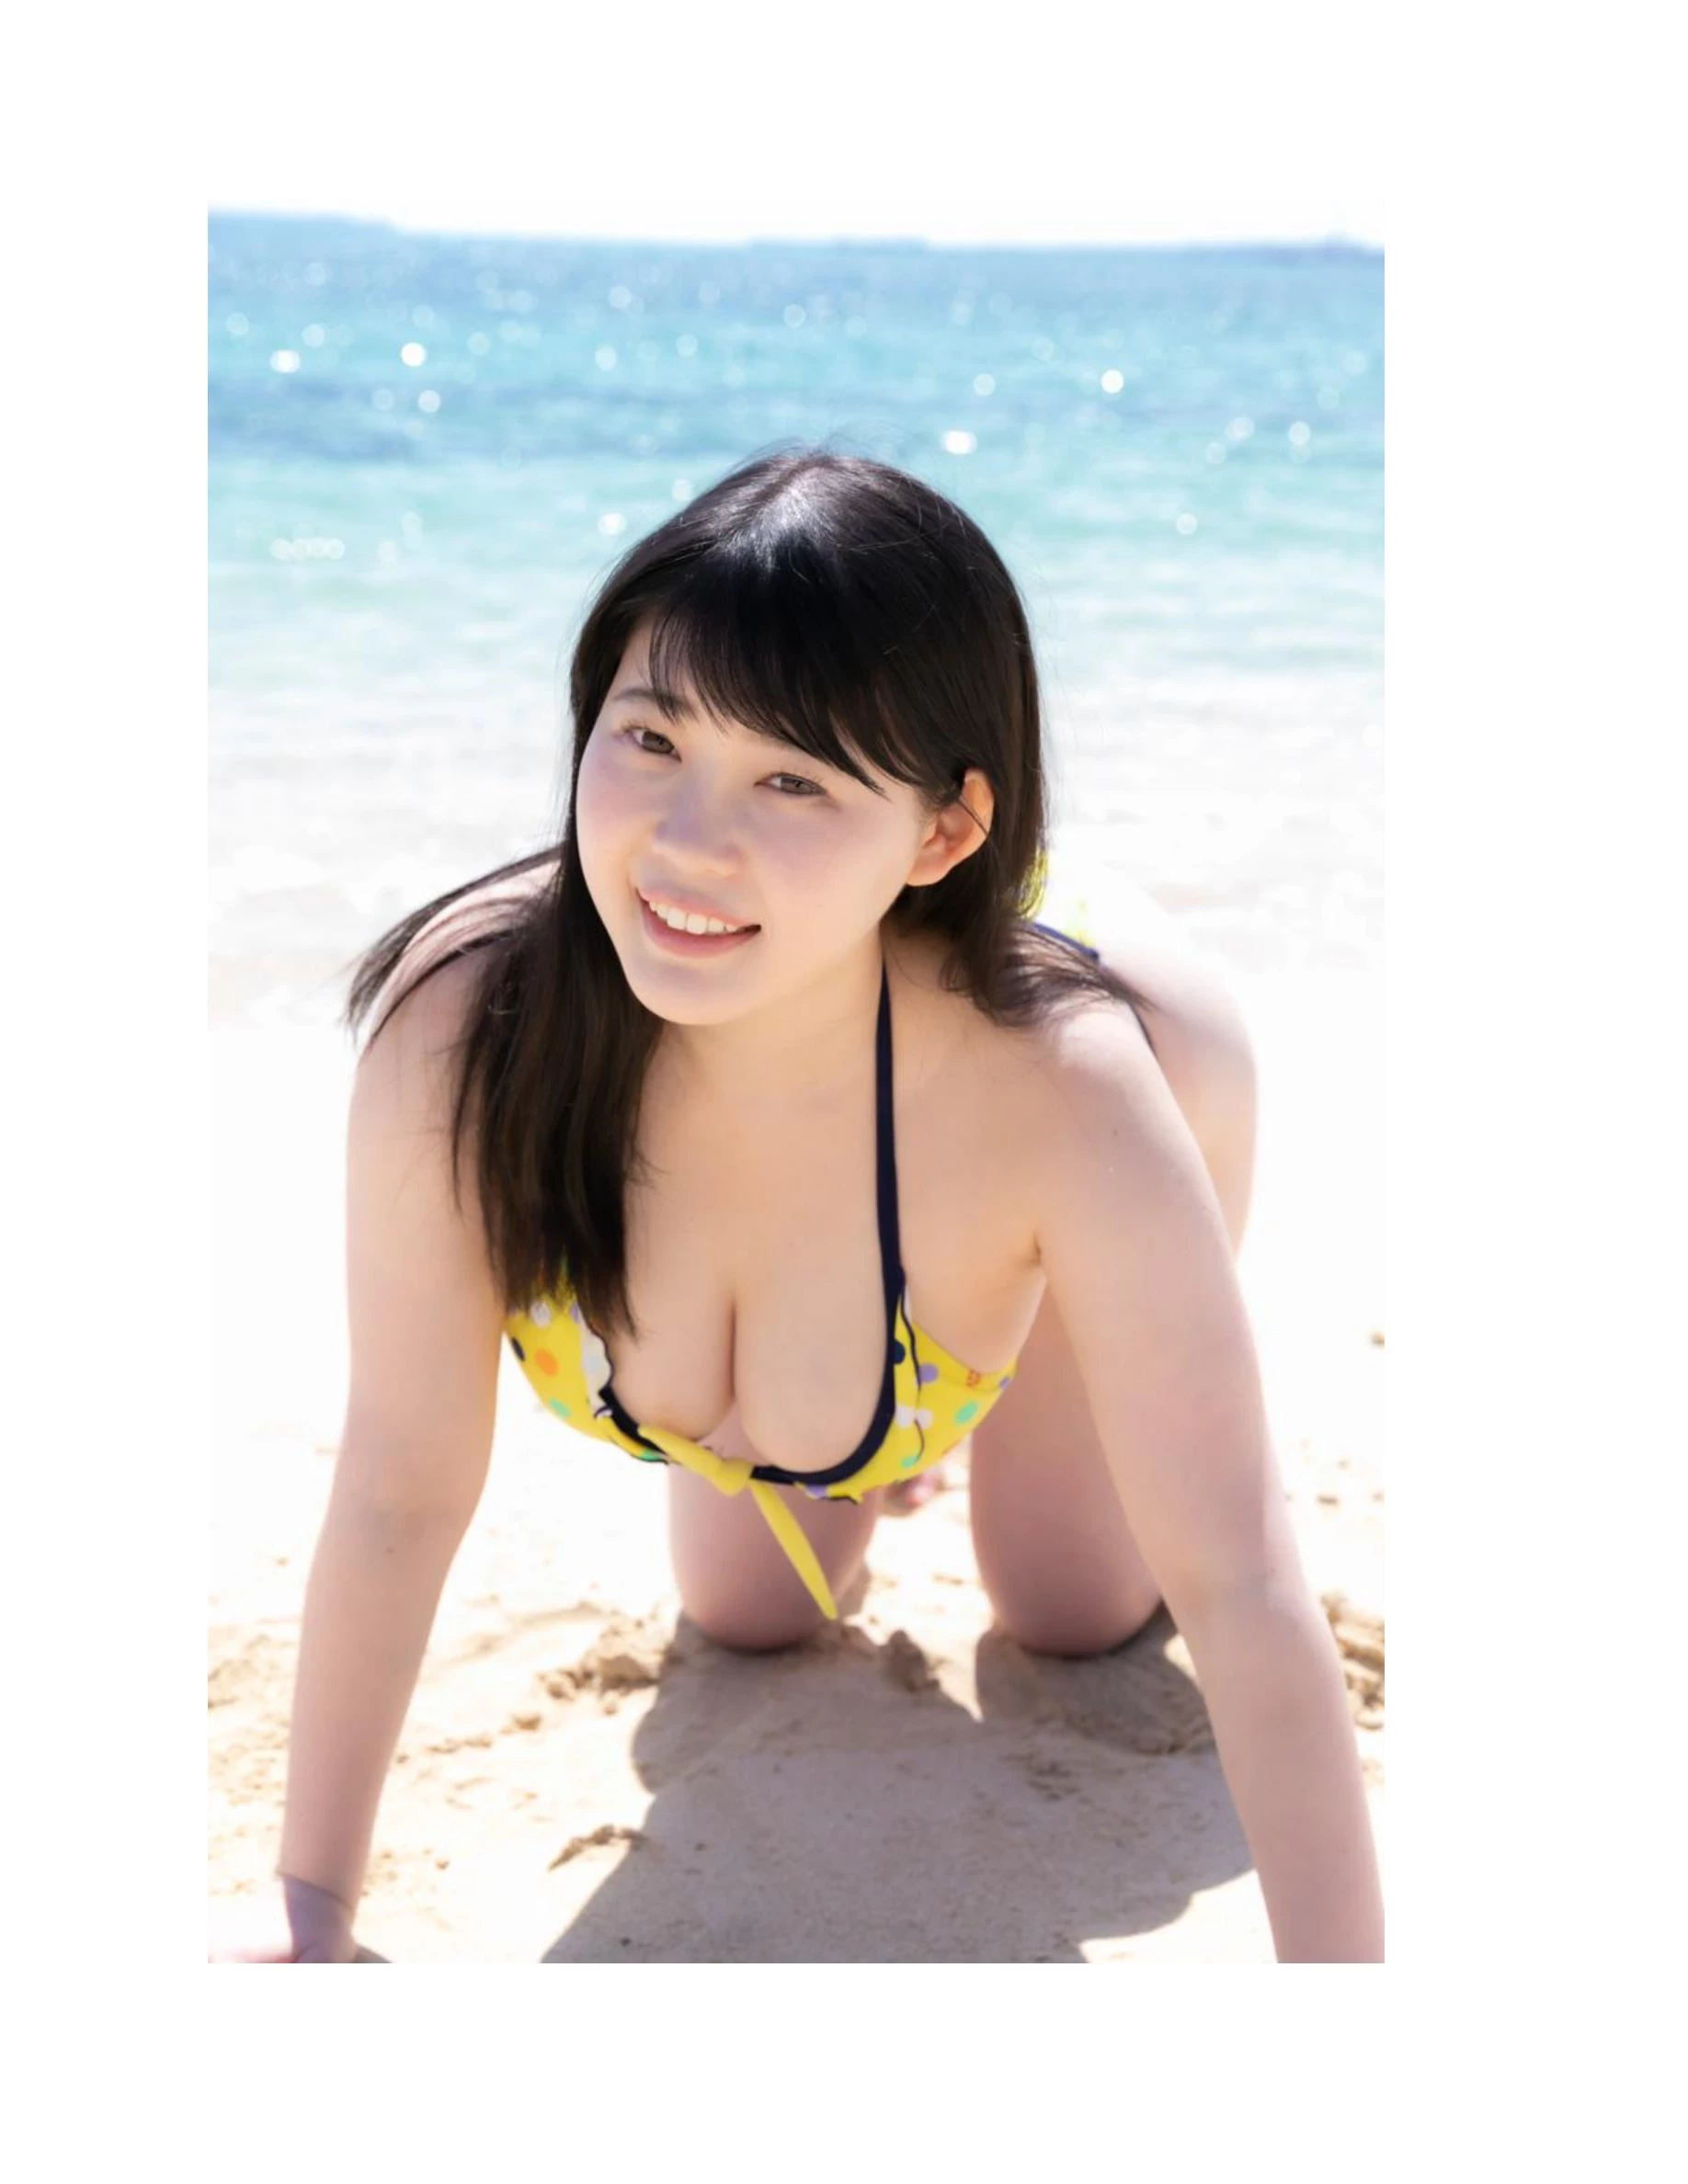 伊川愛梨 卒業旅行 夏 寫真集 J罩杯偶像美少女傳説-416